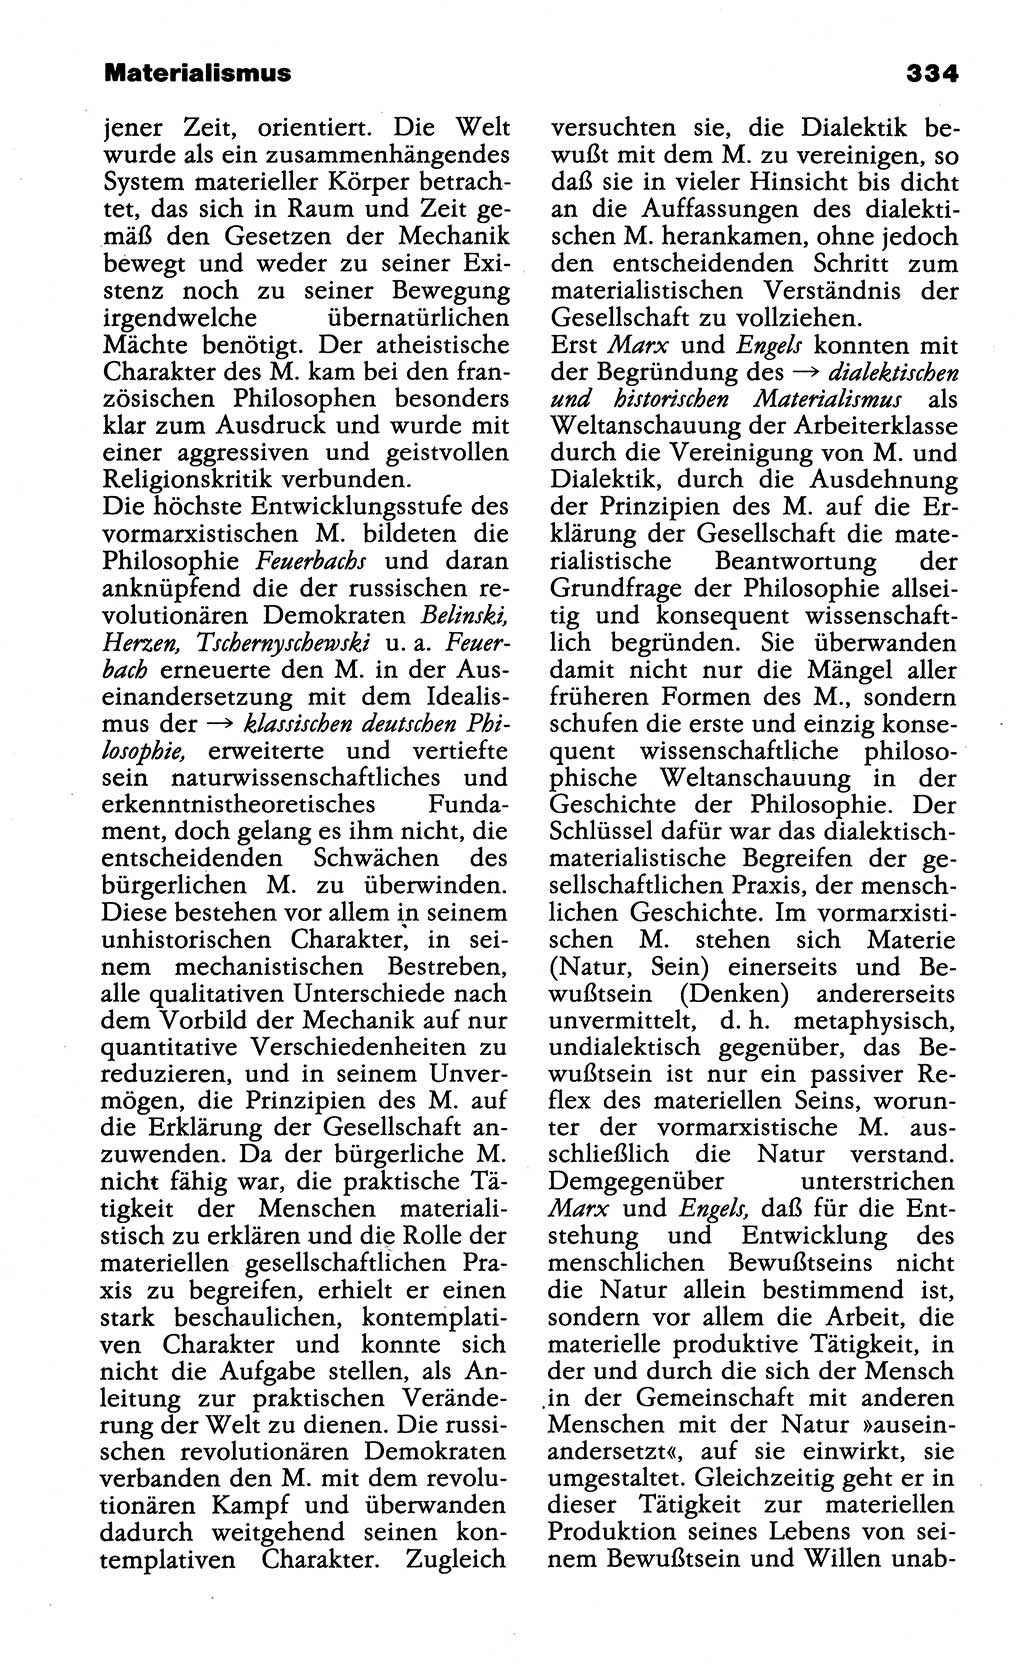 Wörterbuch der marxistisch-leninistischen Philosophie [Deutsche Demokratische Republik (DDR)] 1985, Seite 334 (Wb. ML Phil. DDR 1985, S. 334)